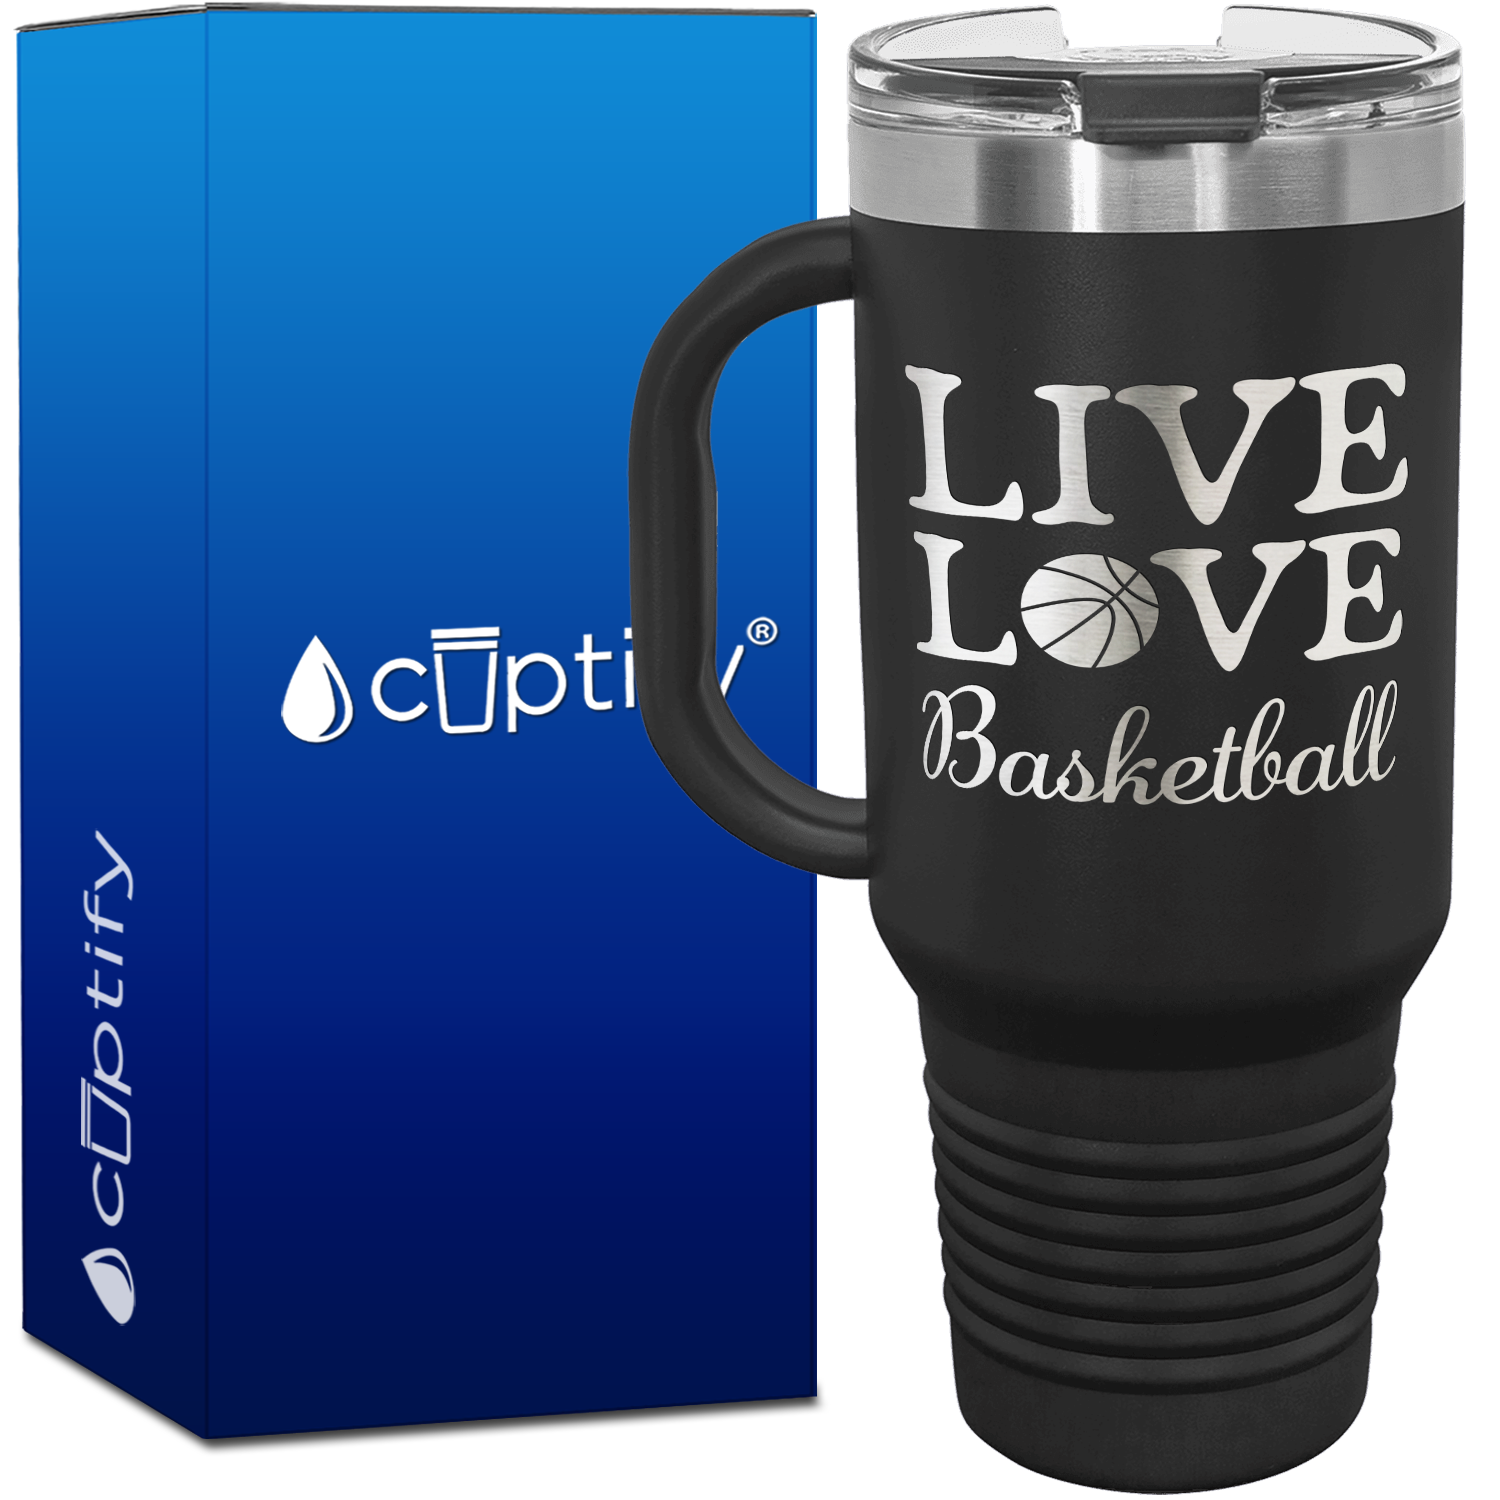 Live Love Basketball 40oz Basketball Travel Mug